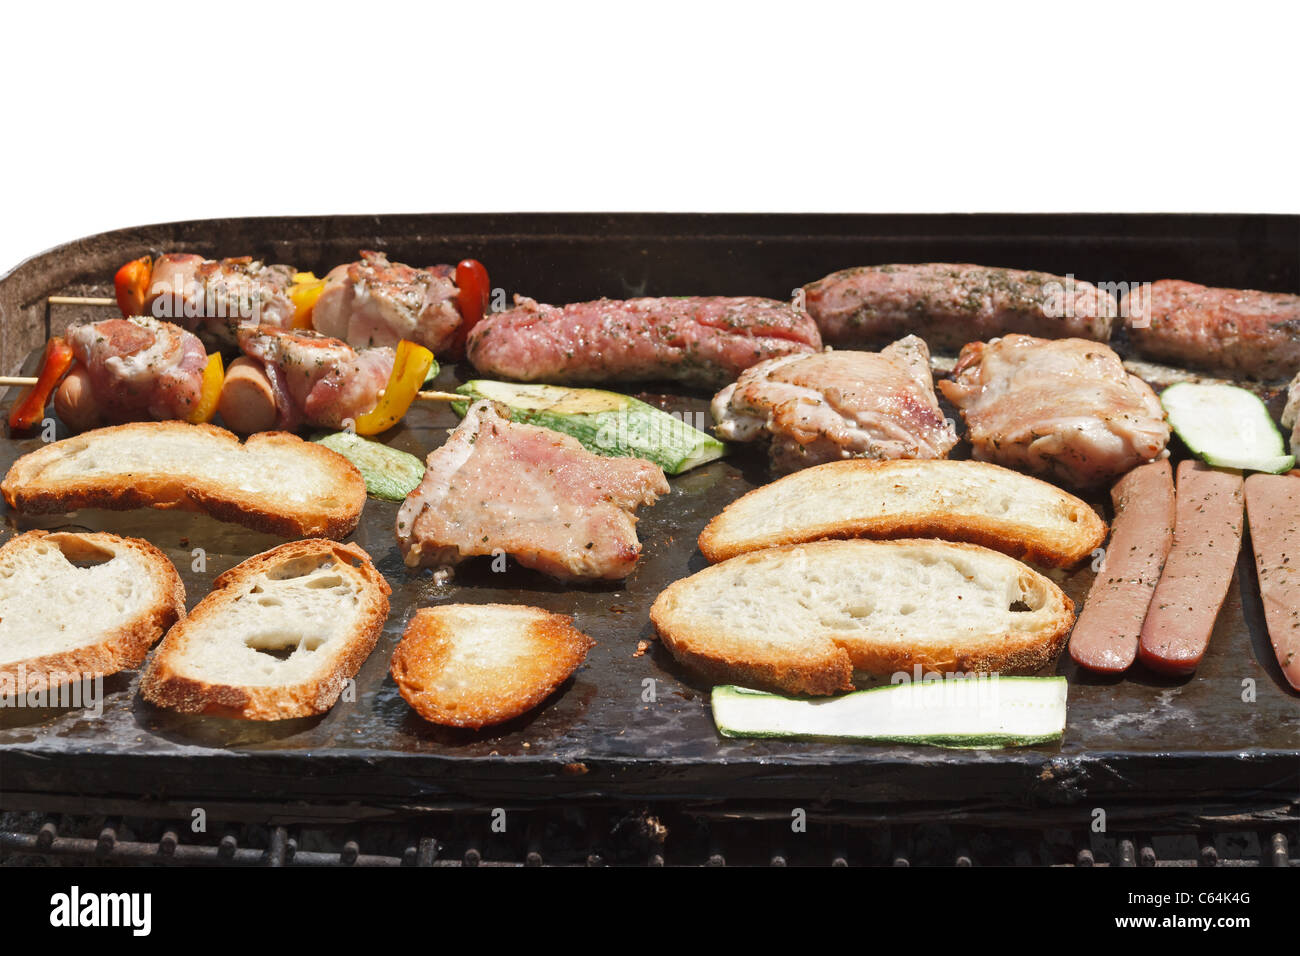 Barbecue avec de la viande, des saucisses, du pain et des légumes isolated on white Banque D'Images